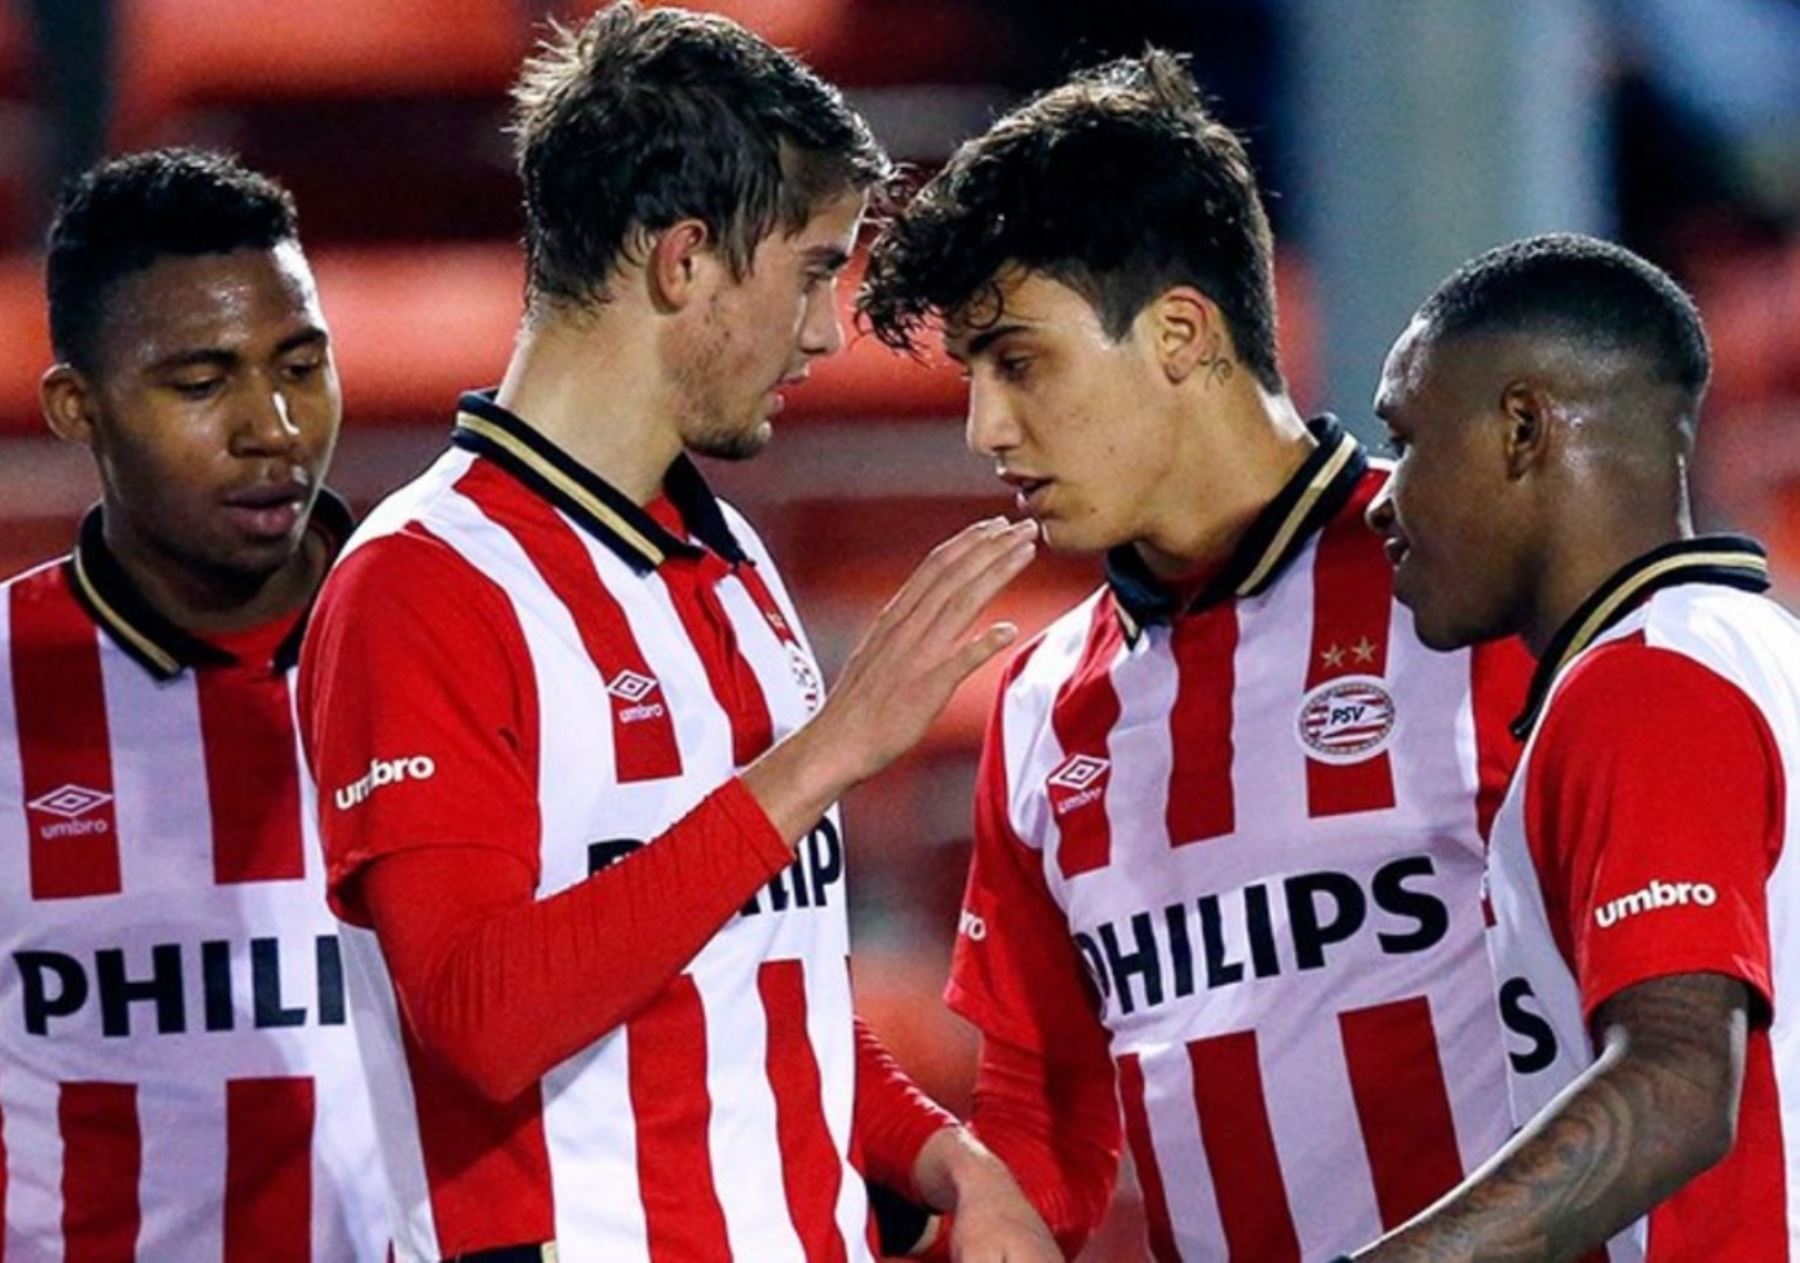 Con gol de Da Silva, el Jong PSV derrotó 3-1 al Helmond por Segunda División  de Holanda | Noticias | Agencia Peruana de Noticias Andina